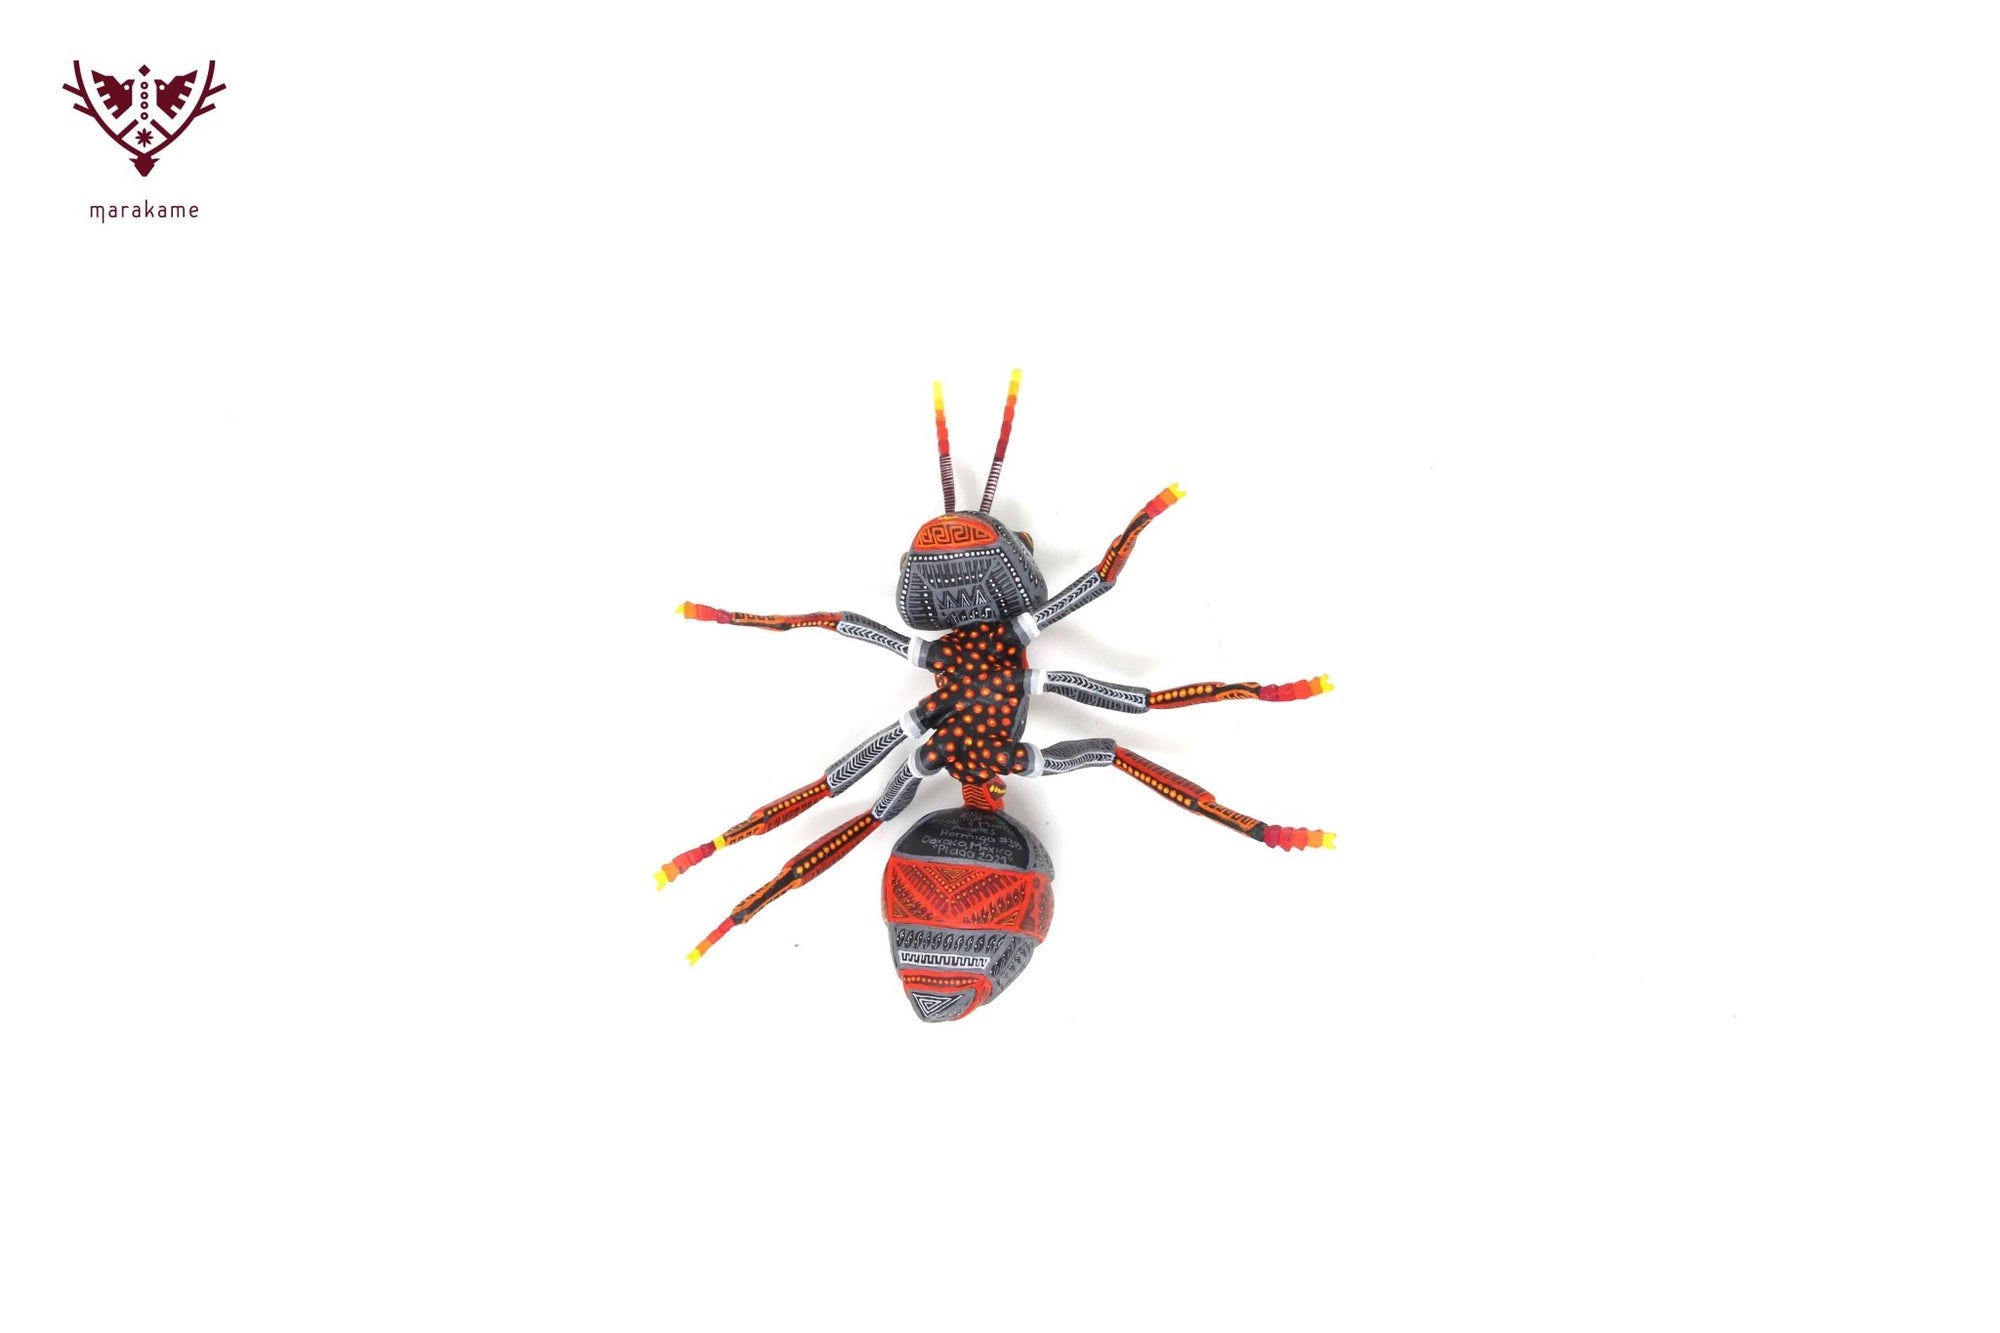 Little Ant - Biri do 'II - Huichol Art - Marakame